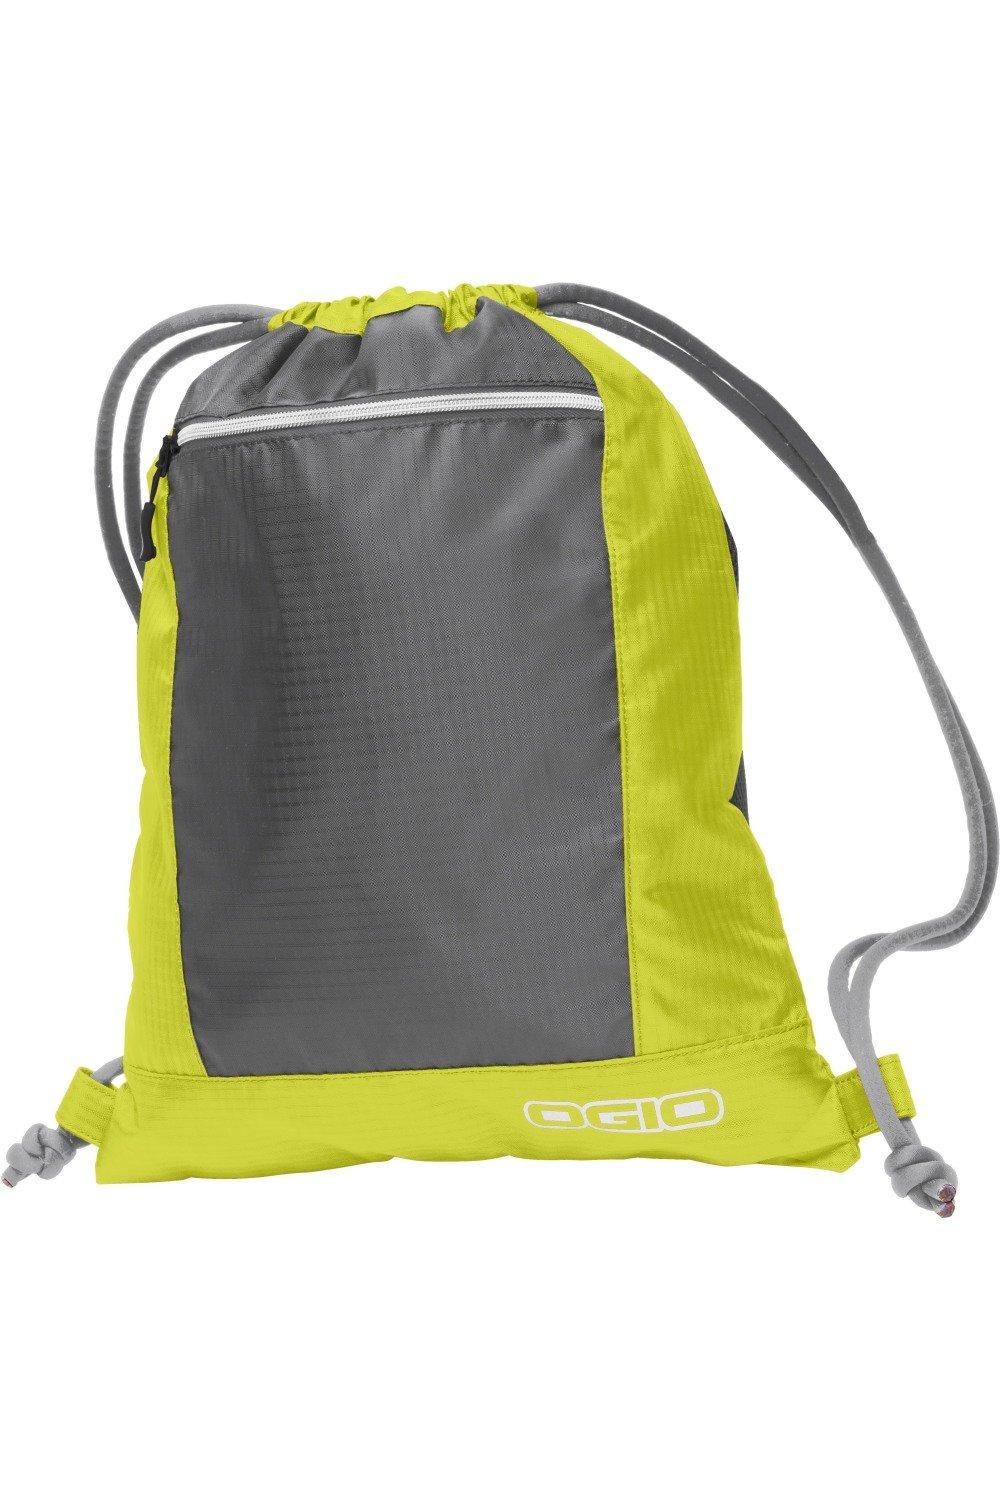 Сумка Endurance Pulse на шнурке Ogio, желтый сумка endurance pulse на шнурке ogio синий